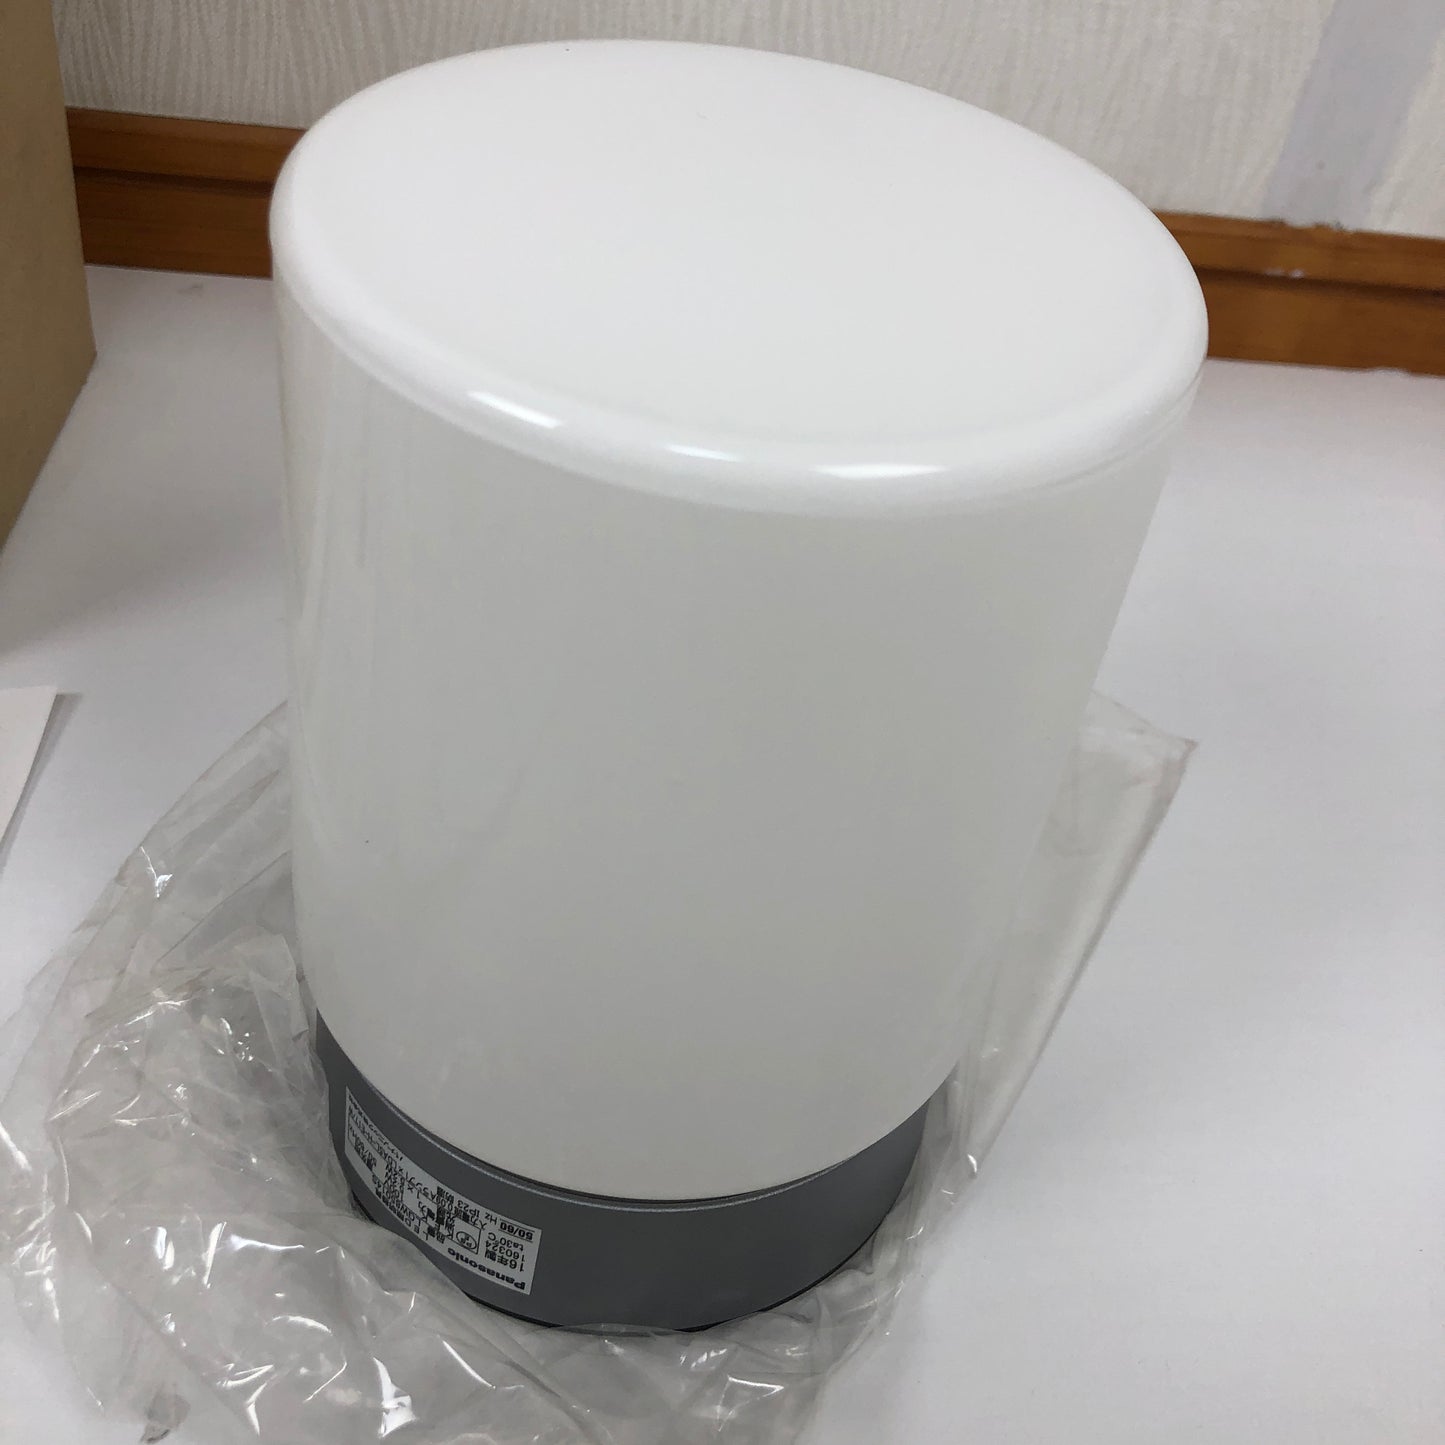 パナソニック(Panasonic) 洗面・浴室用LEDブラケット(電球色)シルバーグレーメタリック LGW85014S